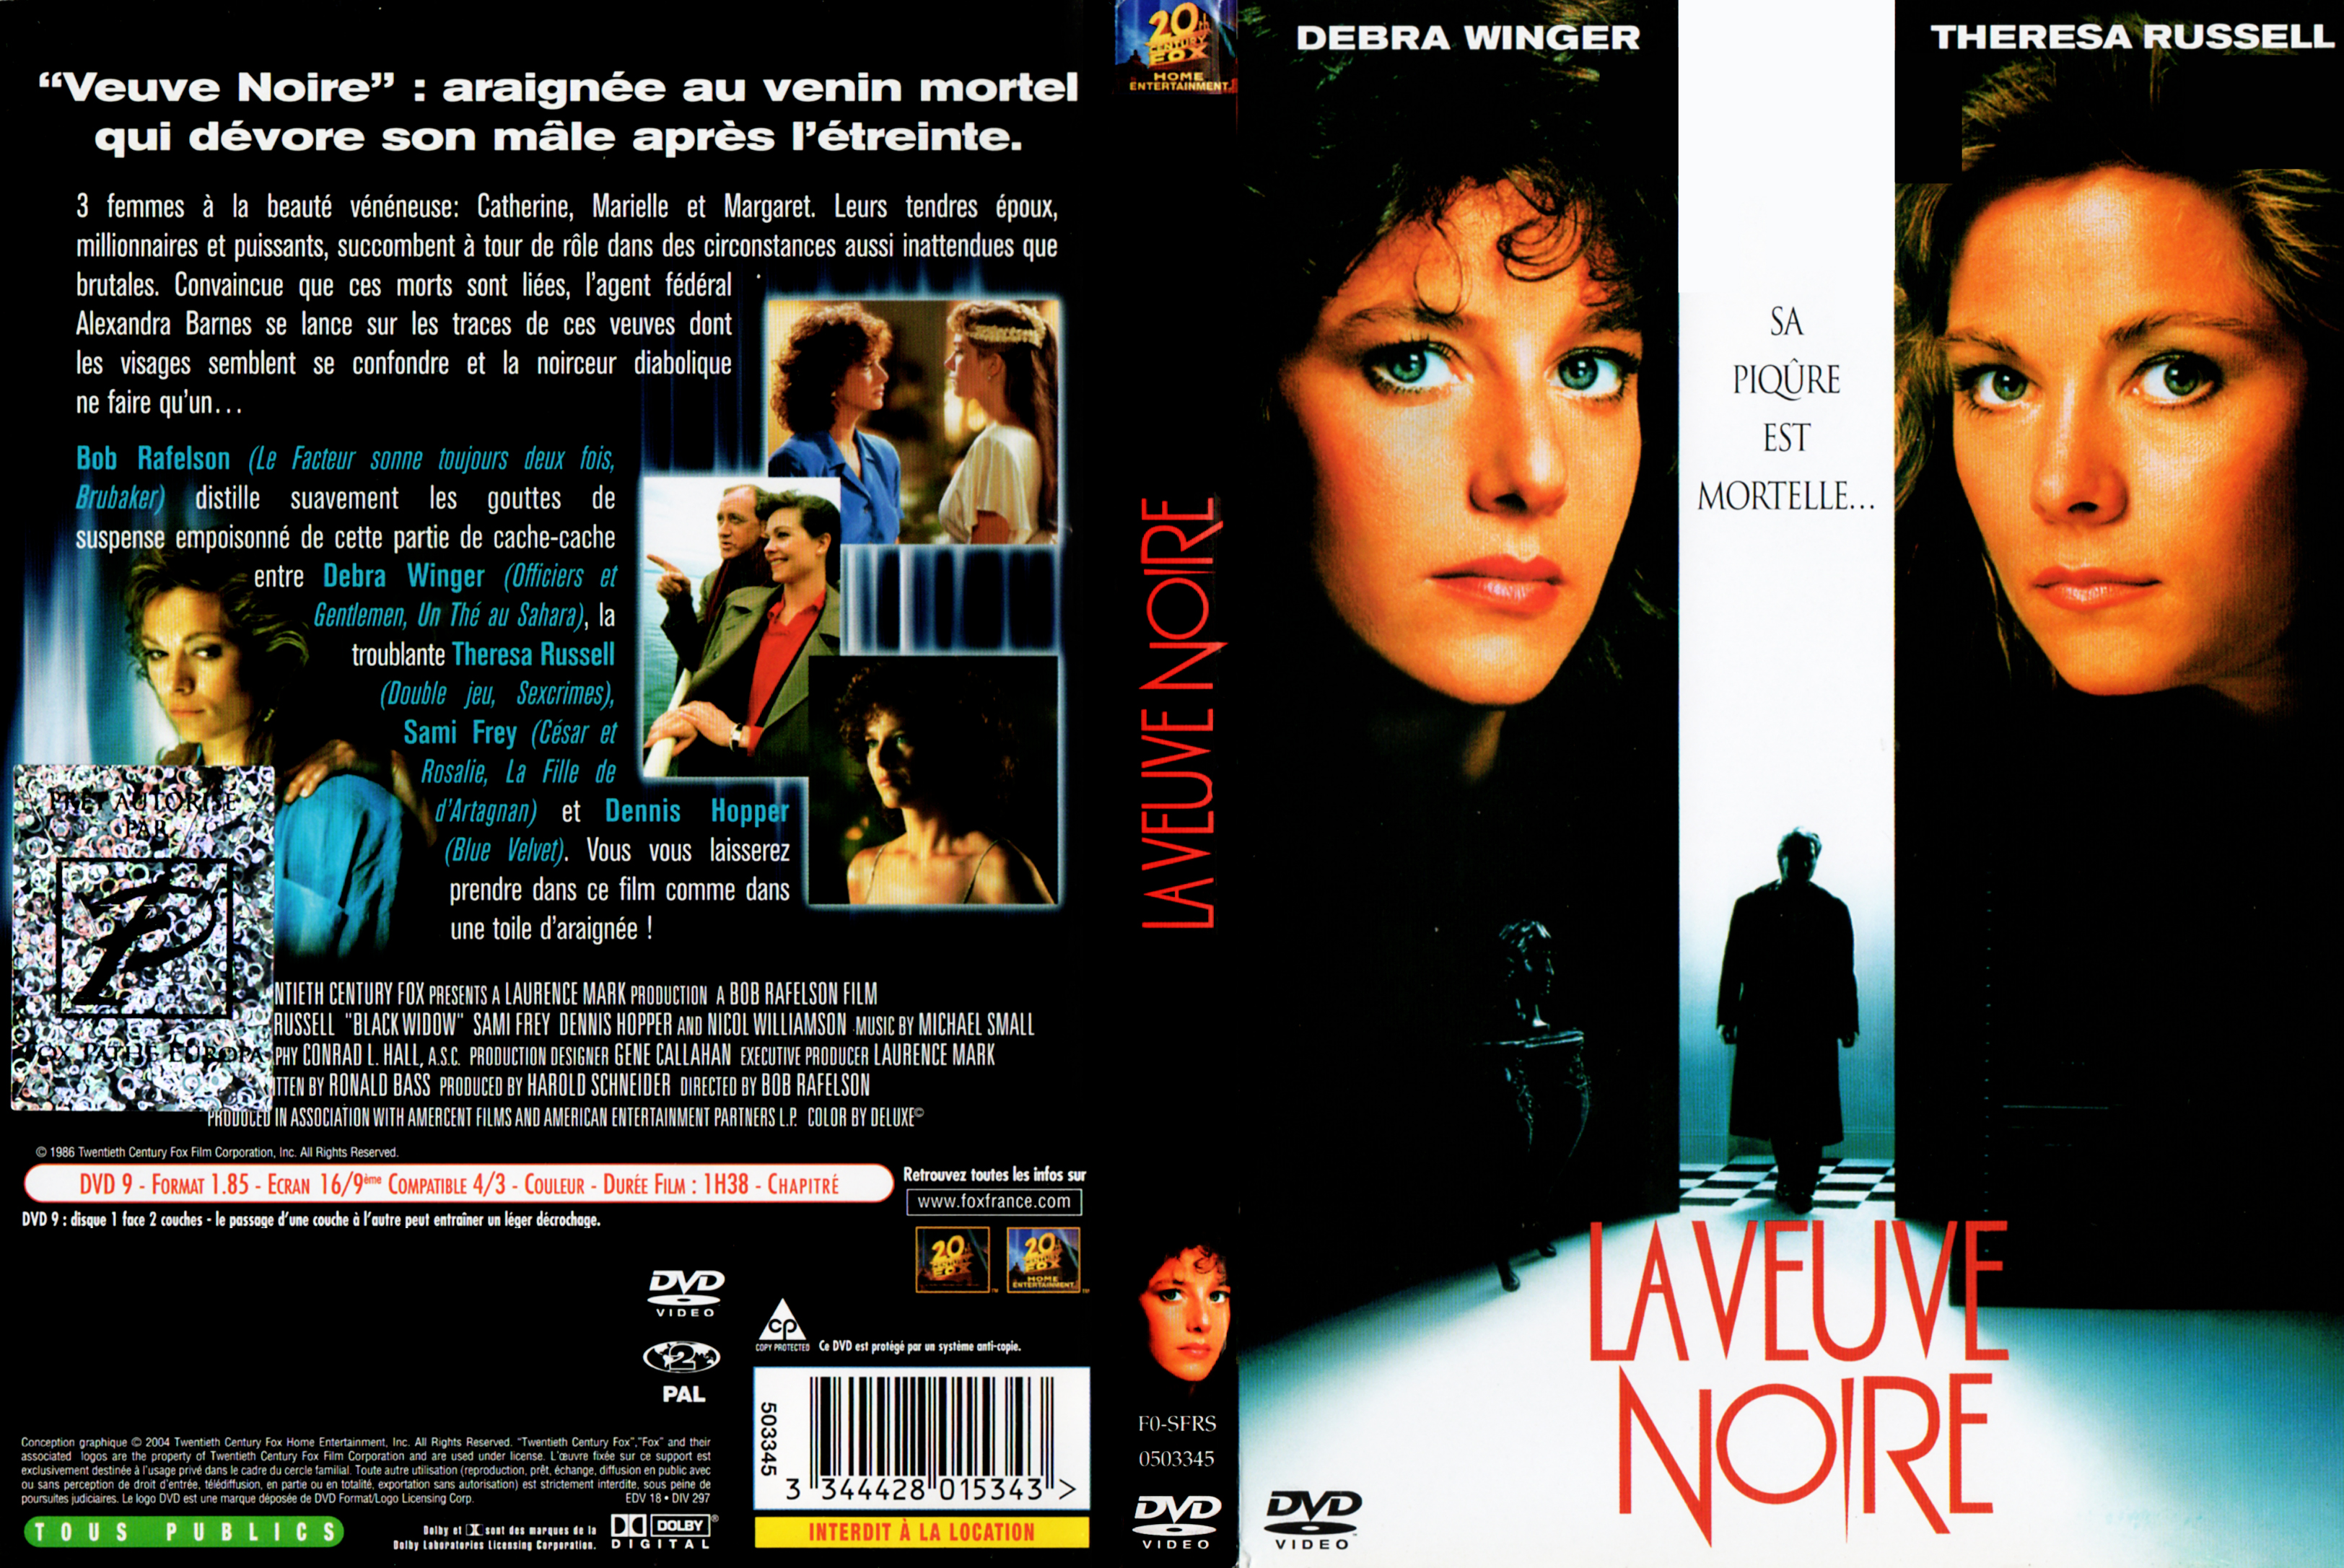 Jaquette DVD La veuve noire